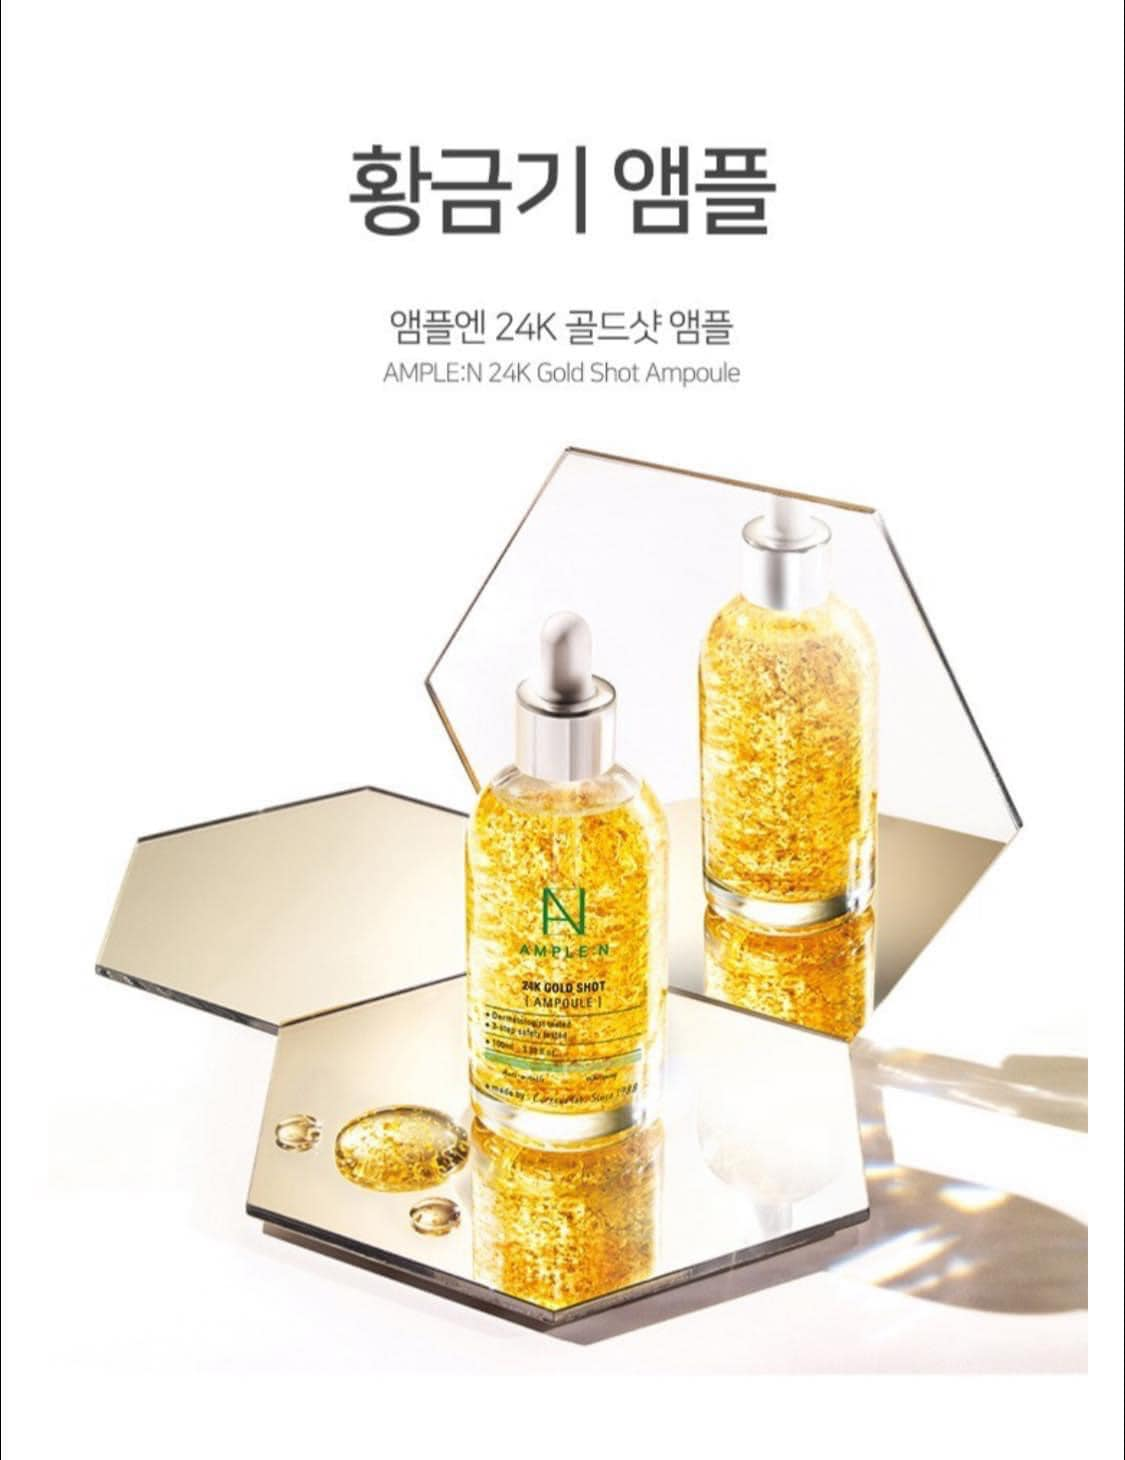 Tinh chất vàng Ample:n giúp chống lão hóa và xóa nhếp nhăn nông 24K Gold Shot Ampoule Corean 100ml